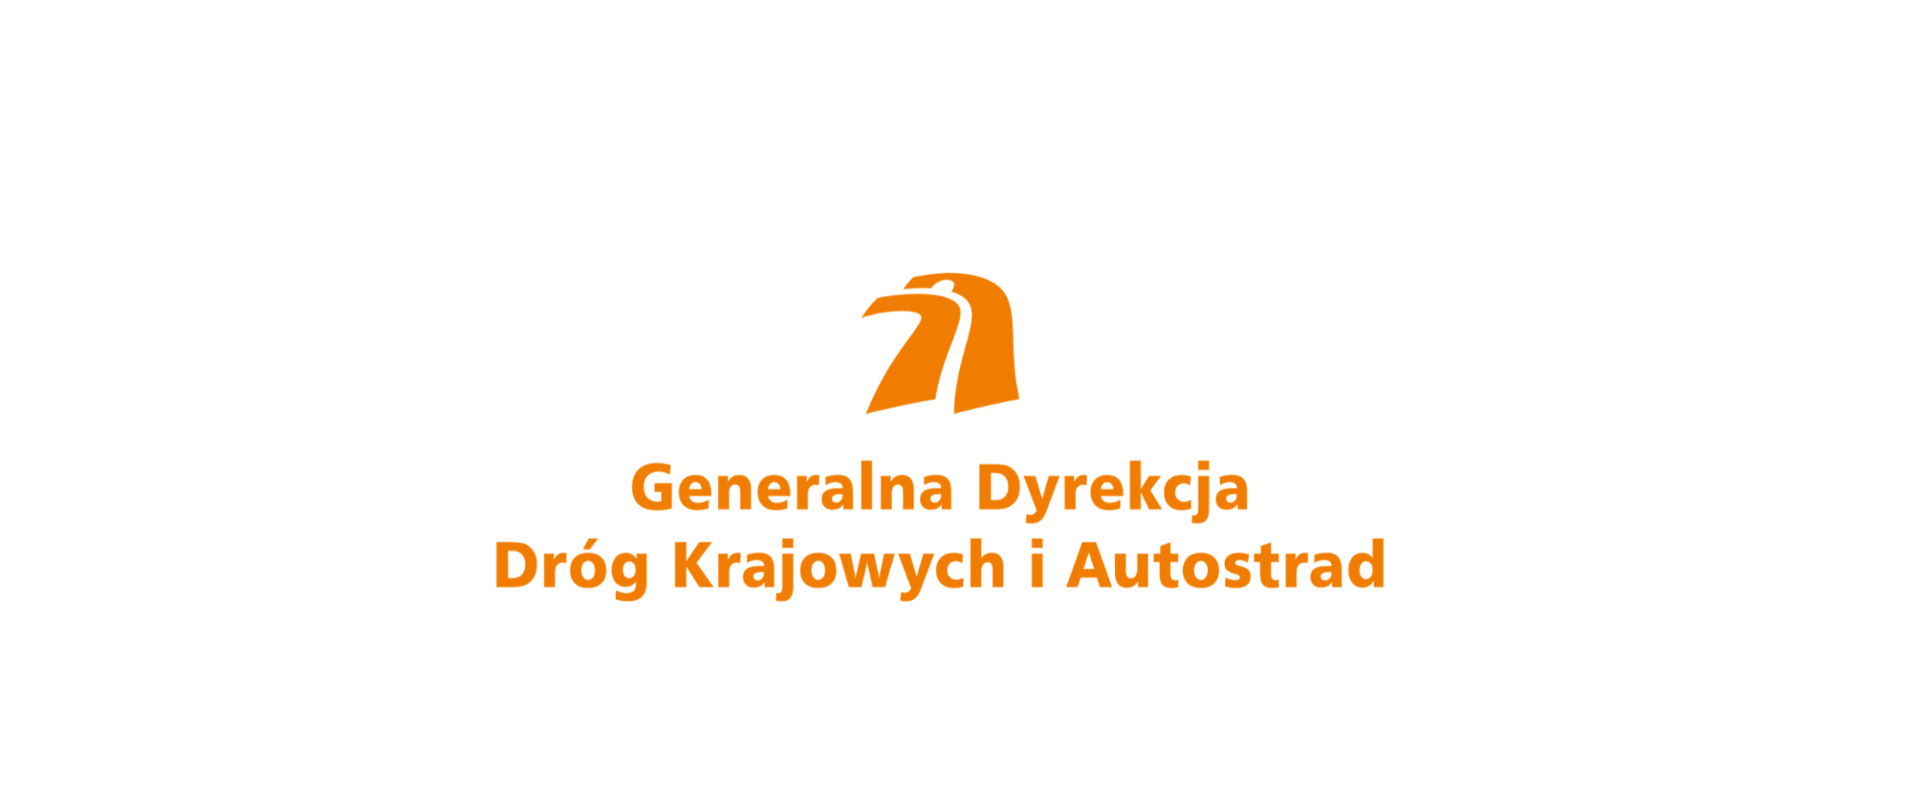 Logotyp Generalnej Dyrekcji Dróg Krajowych i Autostrad. Pomarańczowy symbol głowy orła